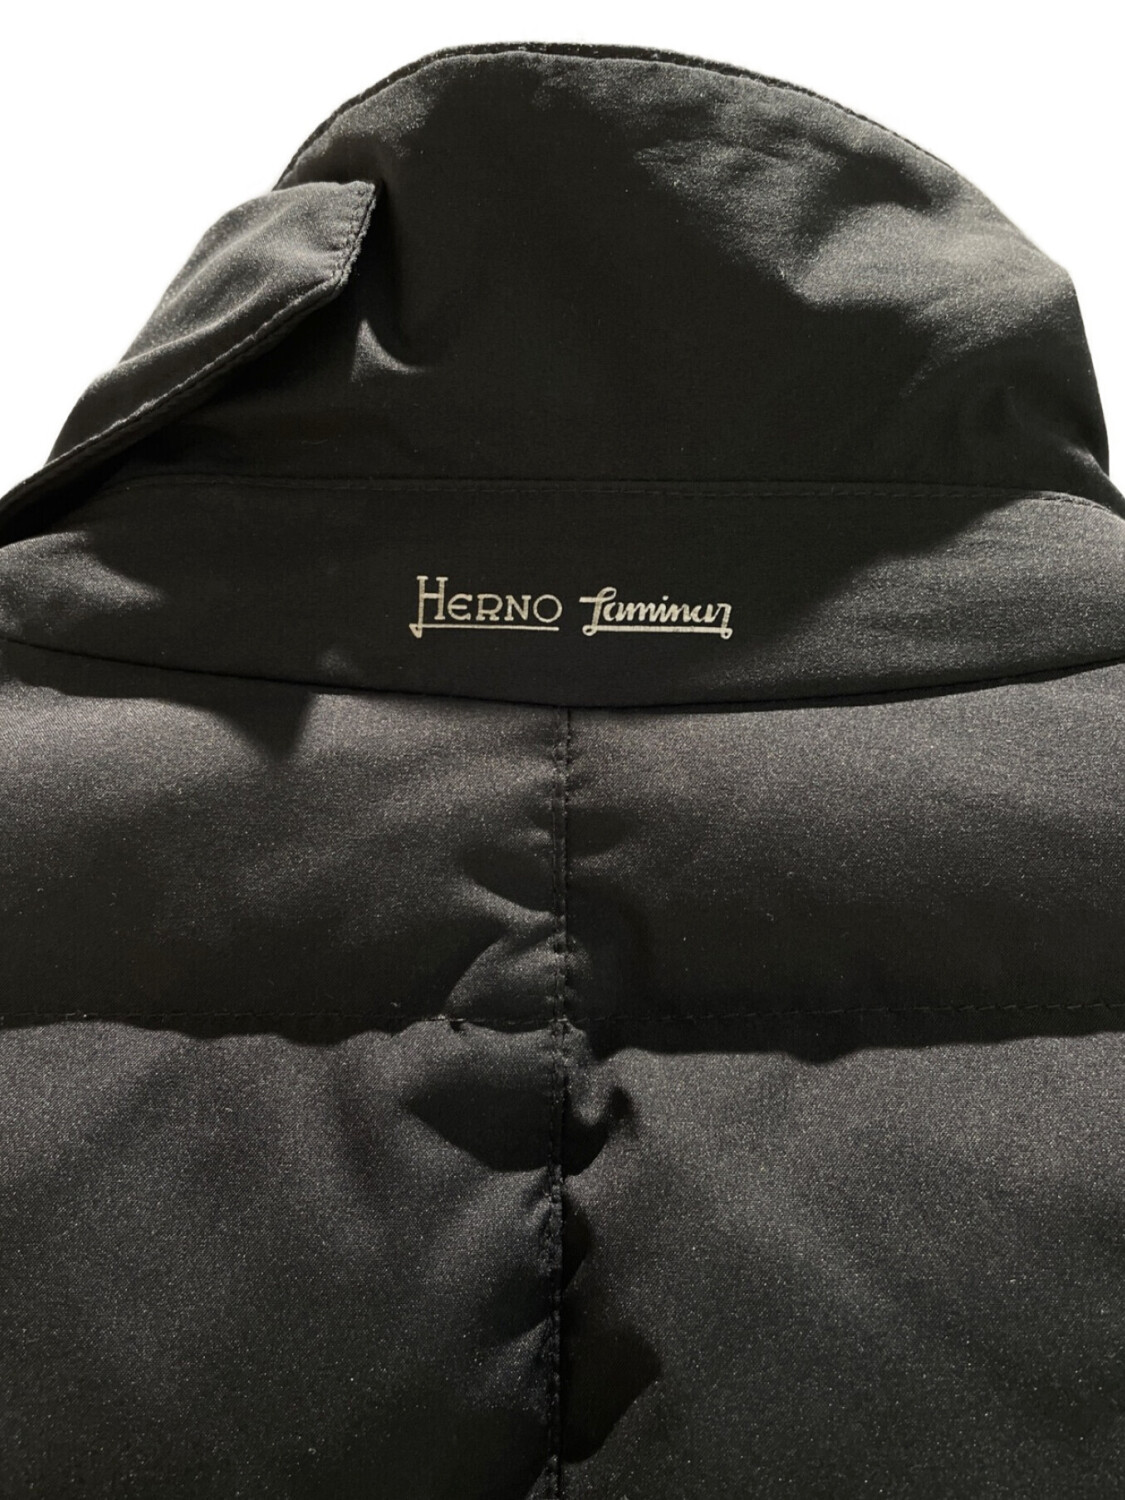 Herno-Campera de Vestir rellena de plumas, Gortex Negro